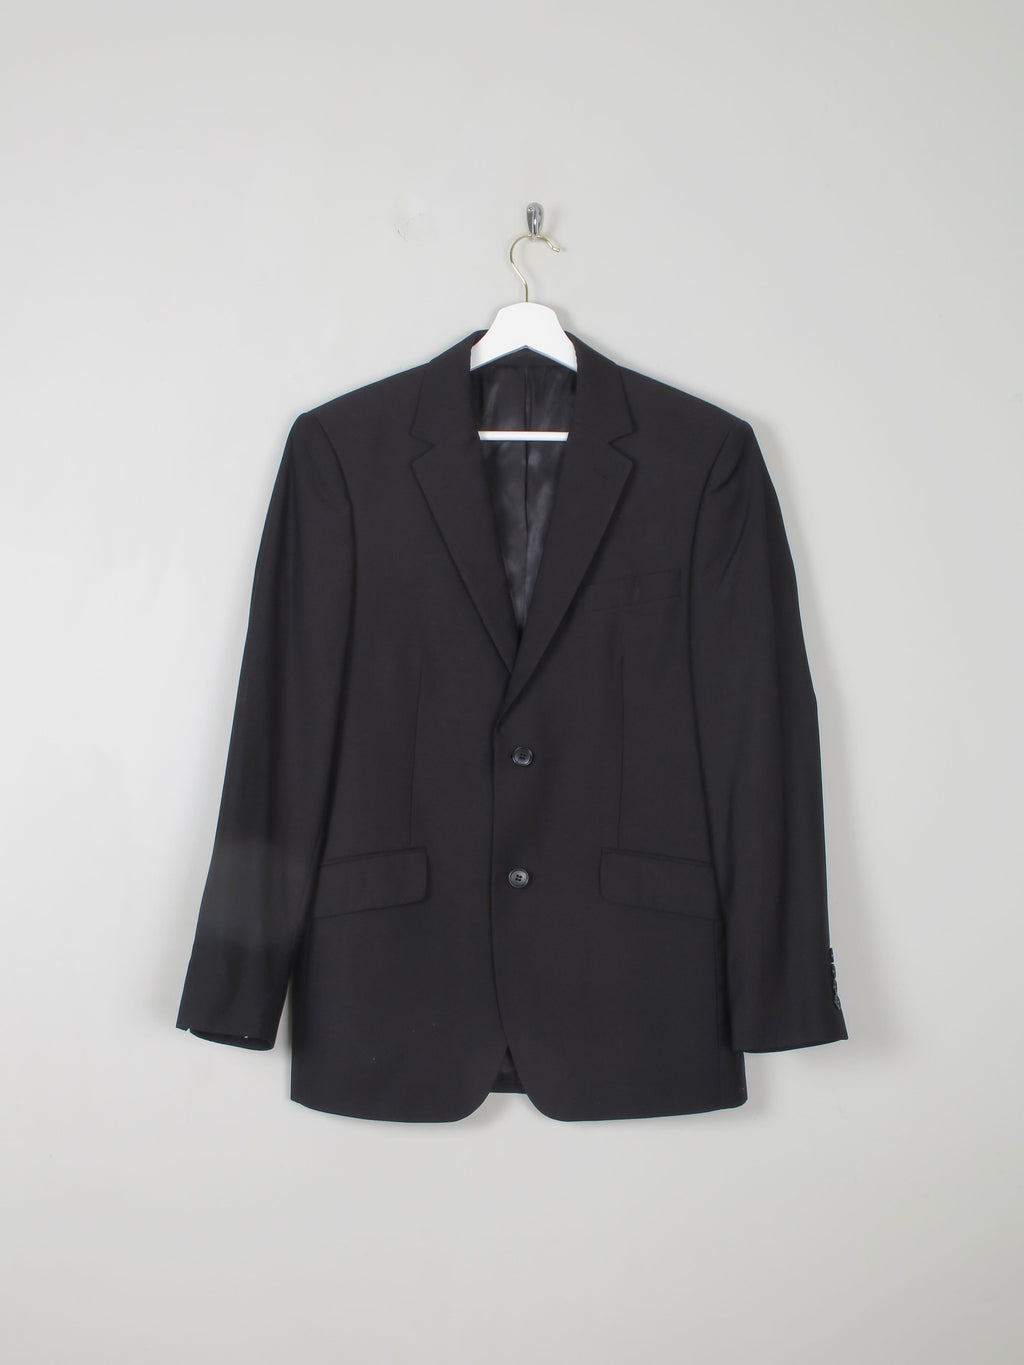 Men's Black Tailored Vintage Jacket 38"R/ S - The Harlequin